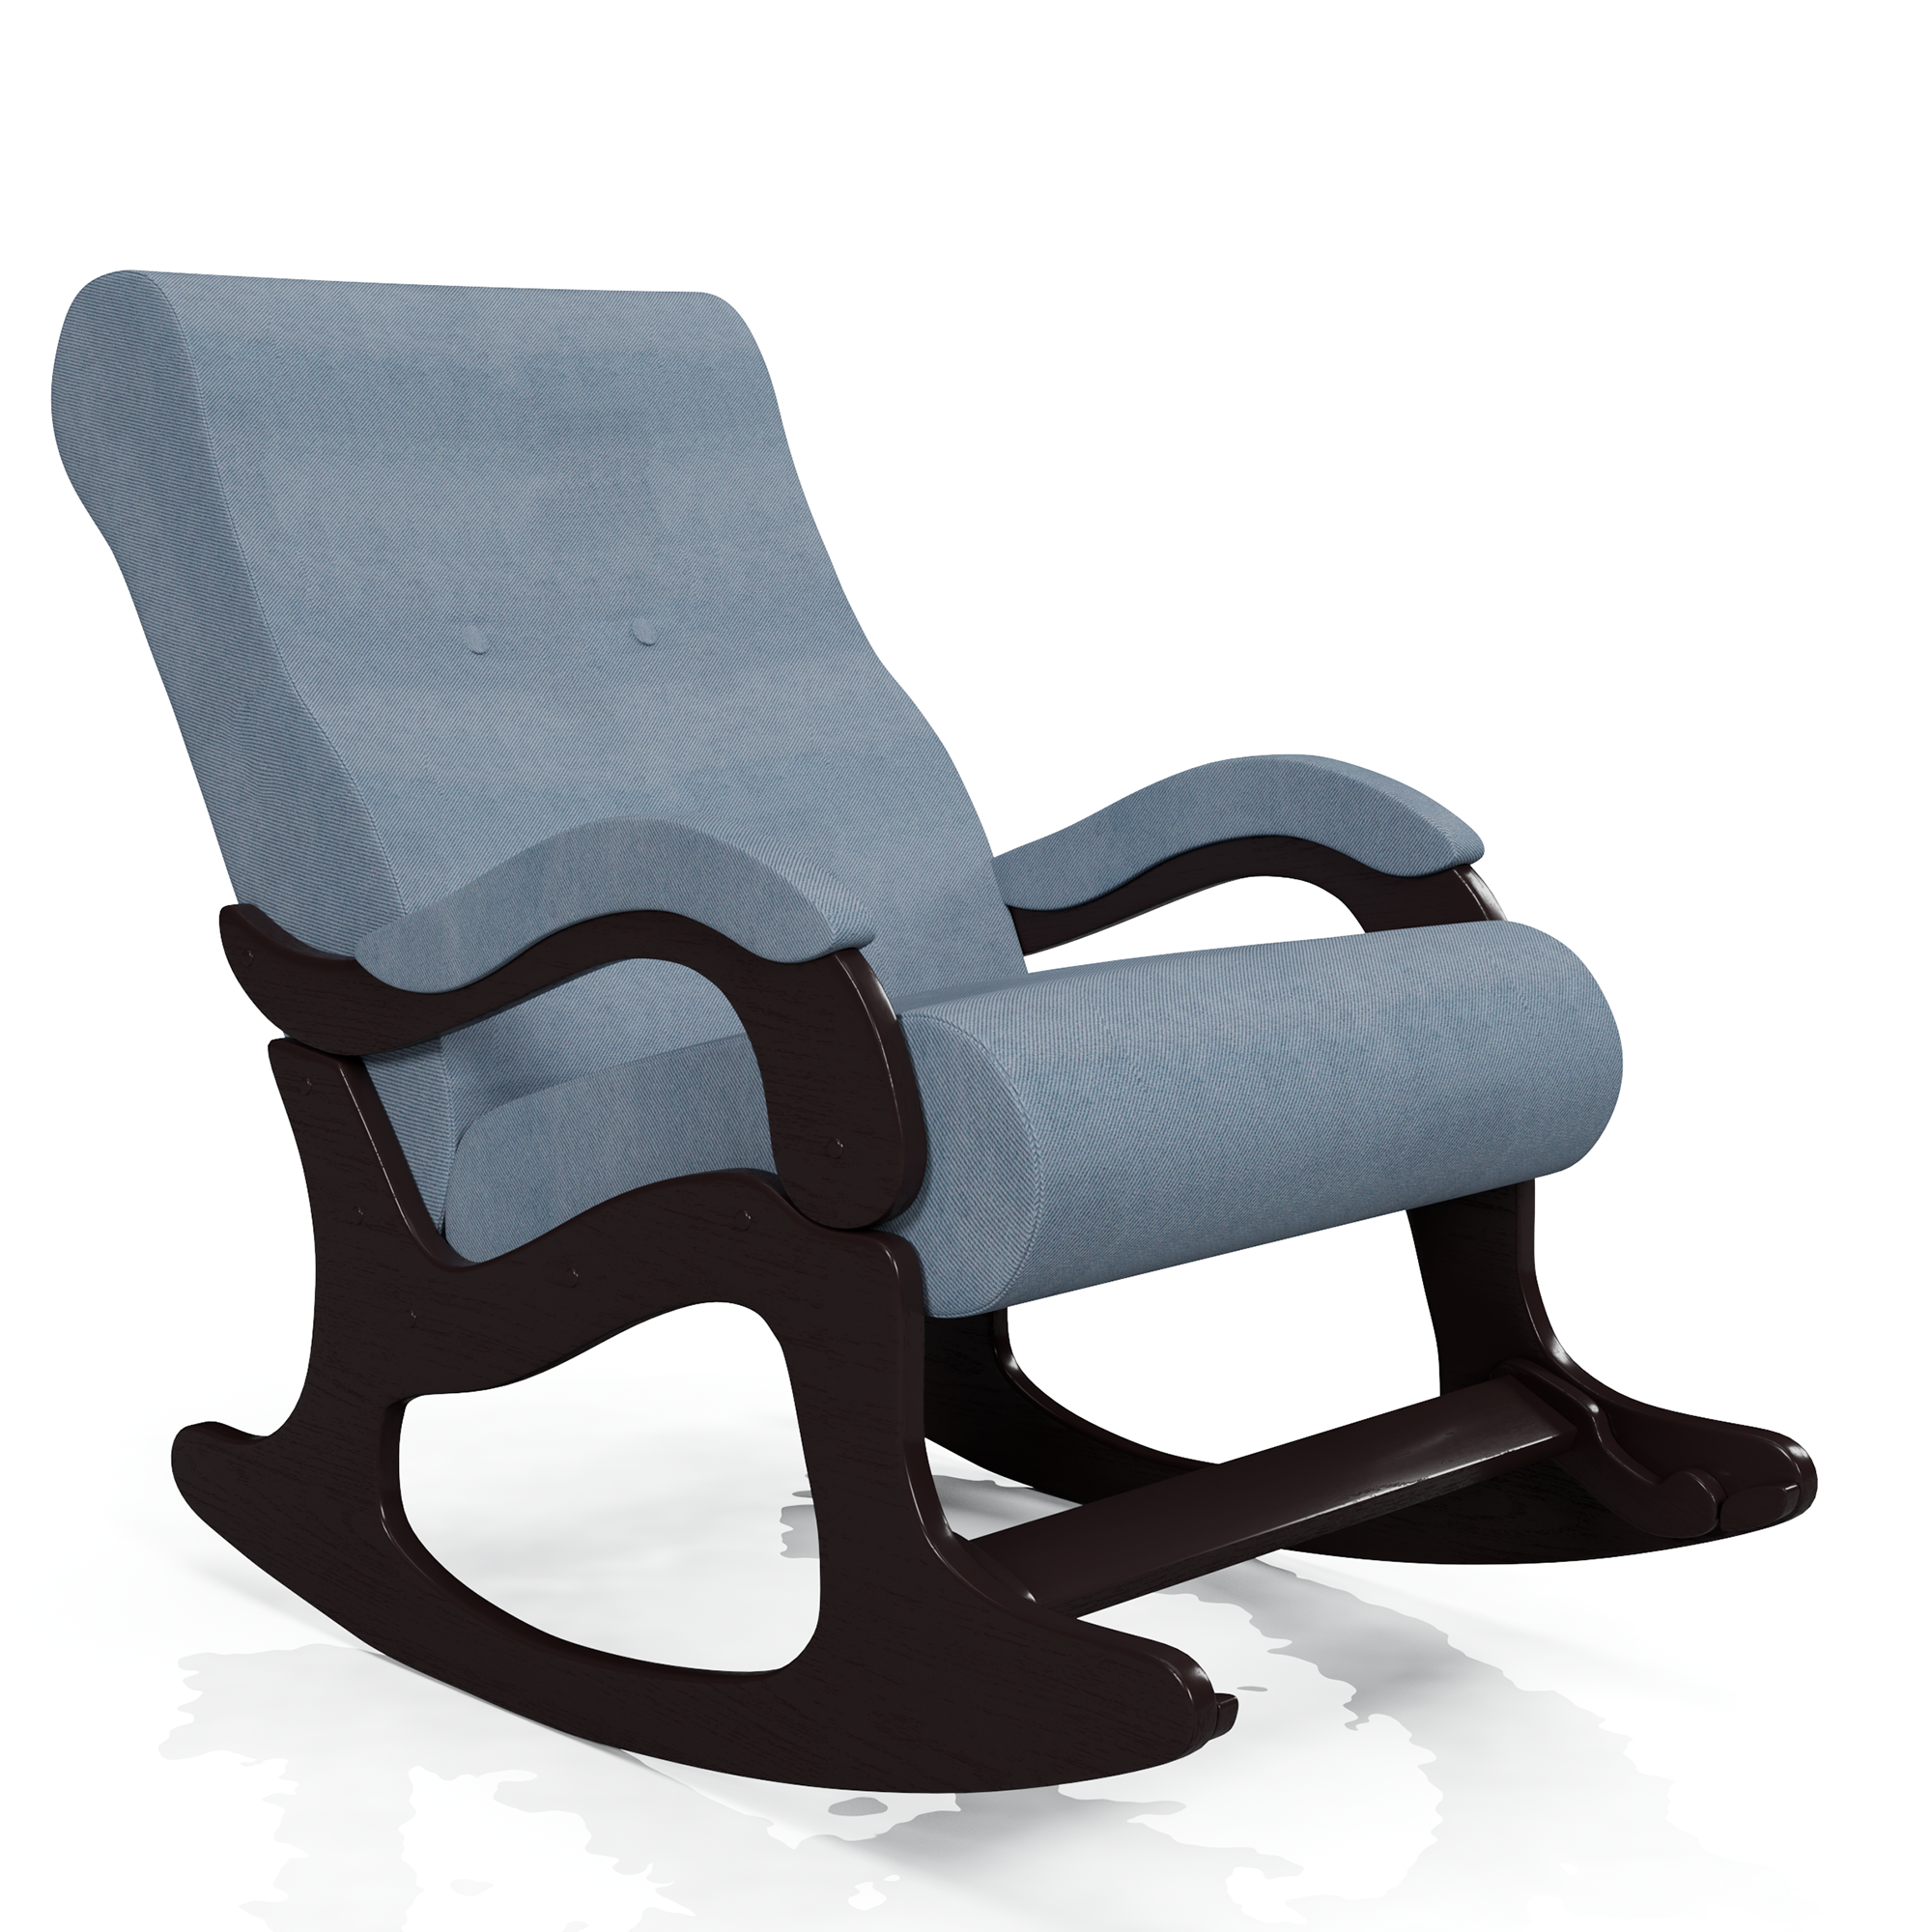 Подвесные кресла элитного класса из искусственного ротанга от производителя